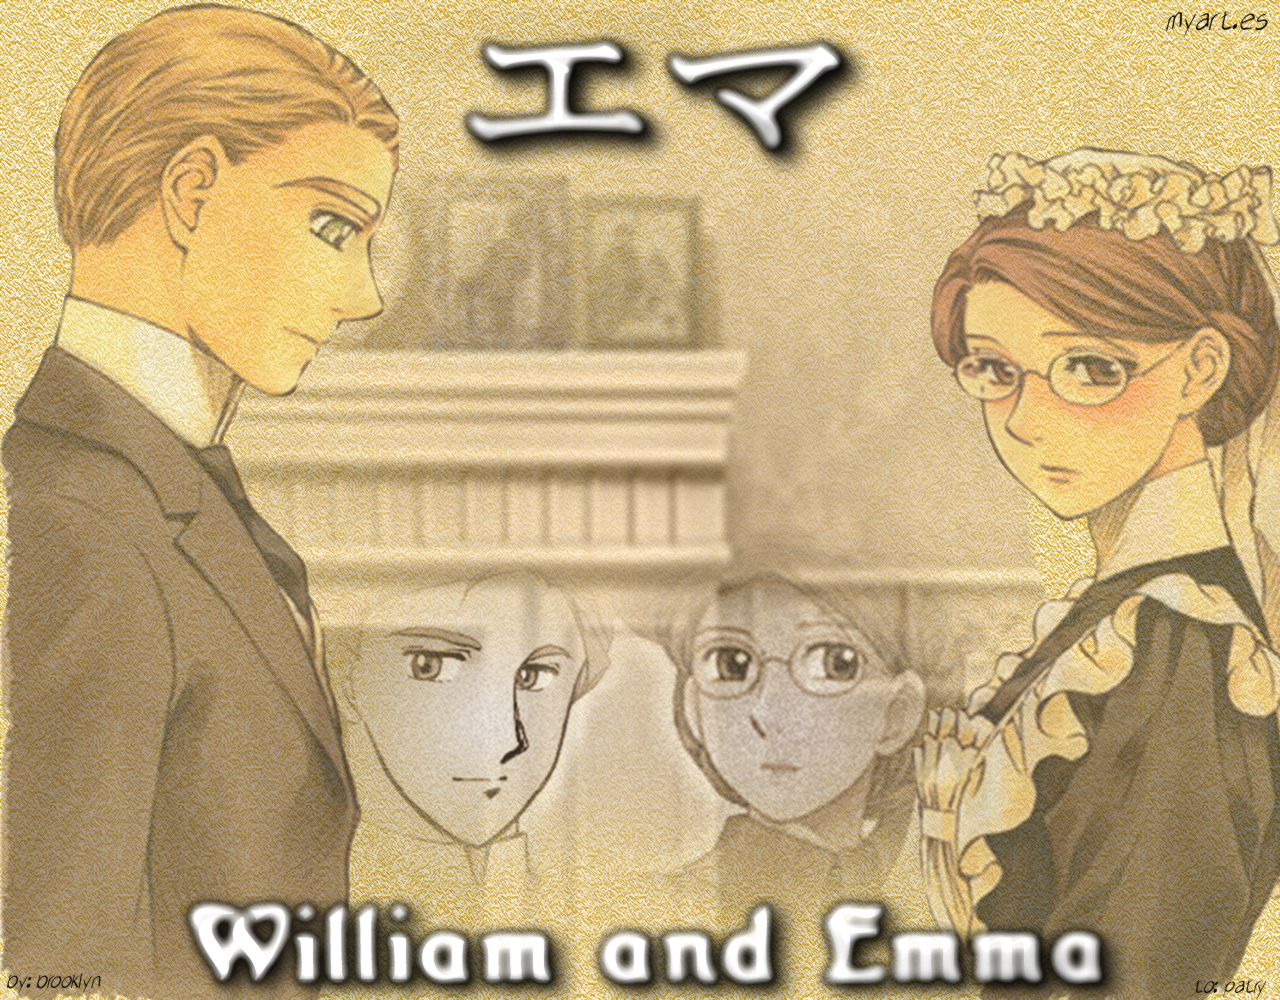 Emma and William